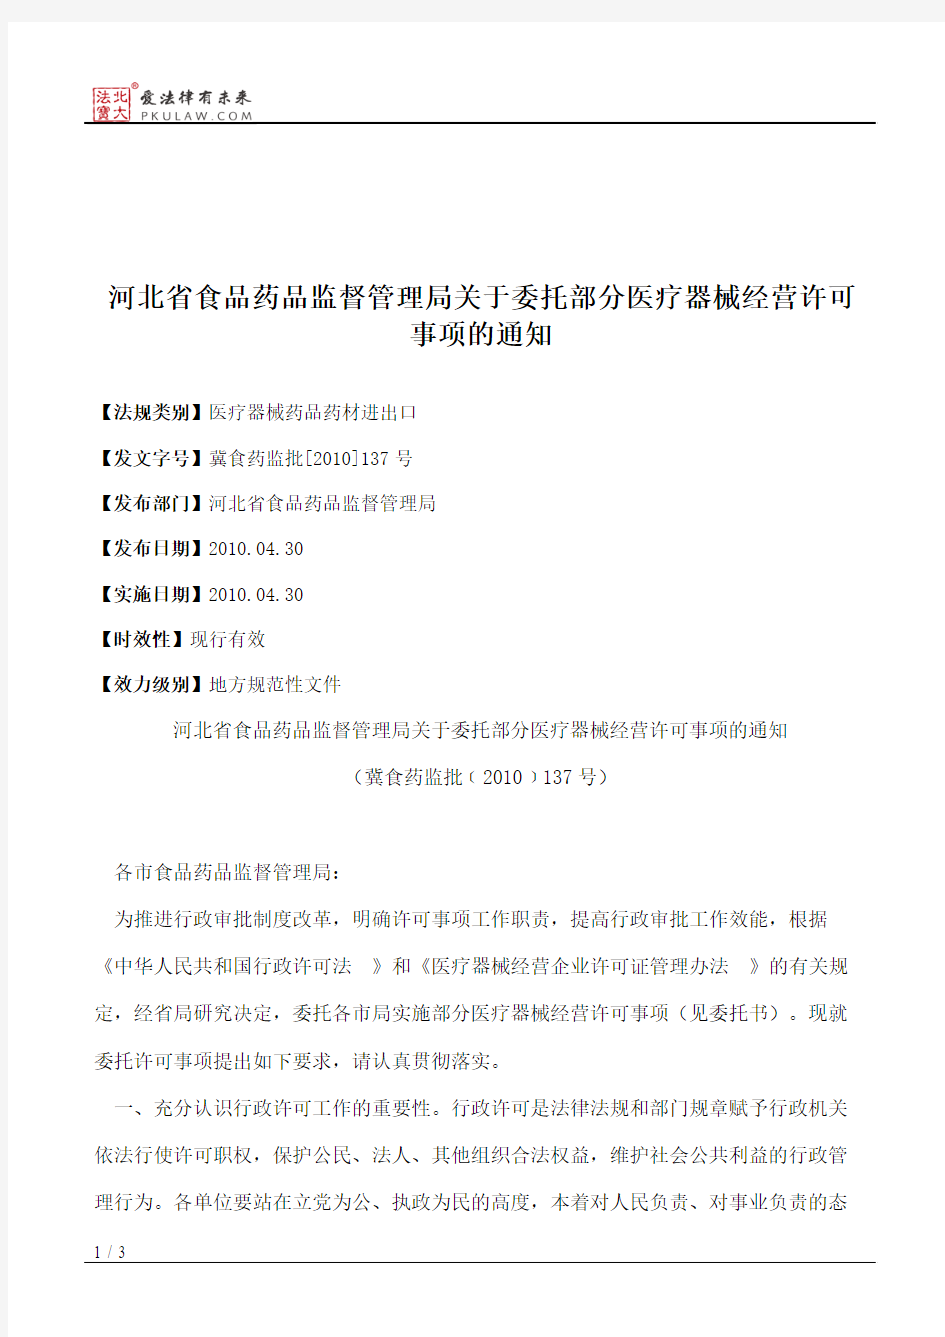 河北省食品药品监督管理局关于委托部分医疗器械经营许可事项的通知